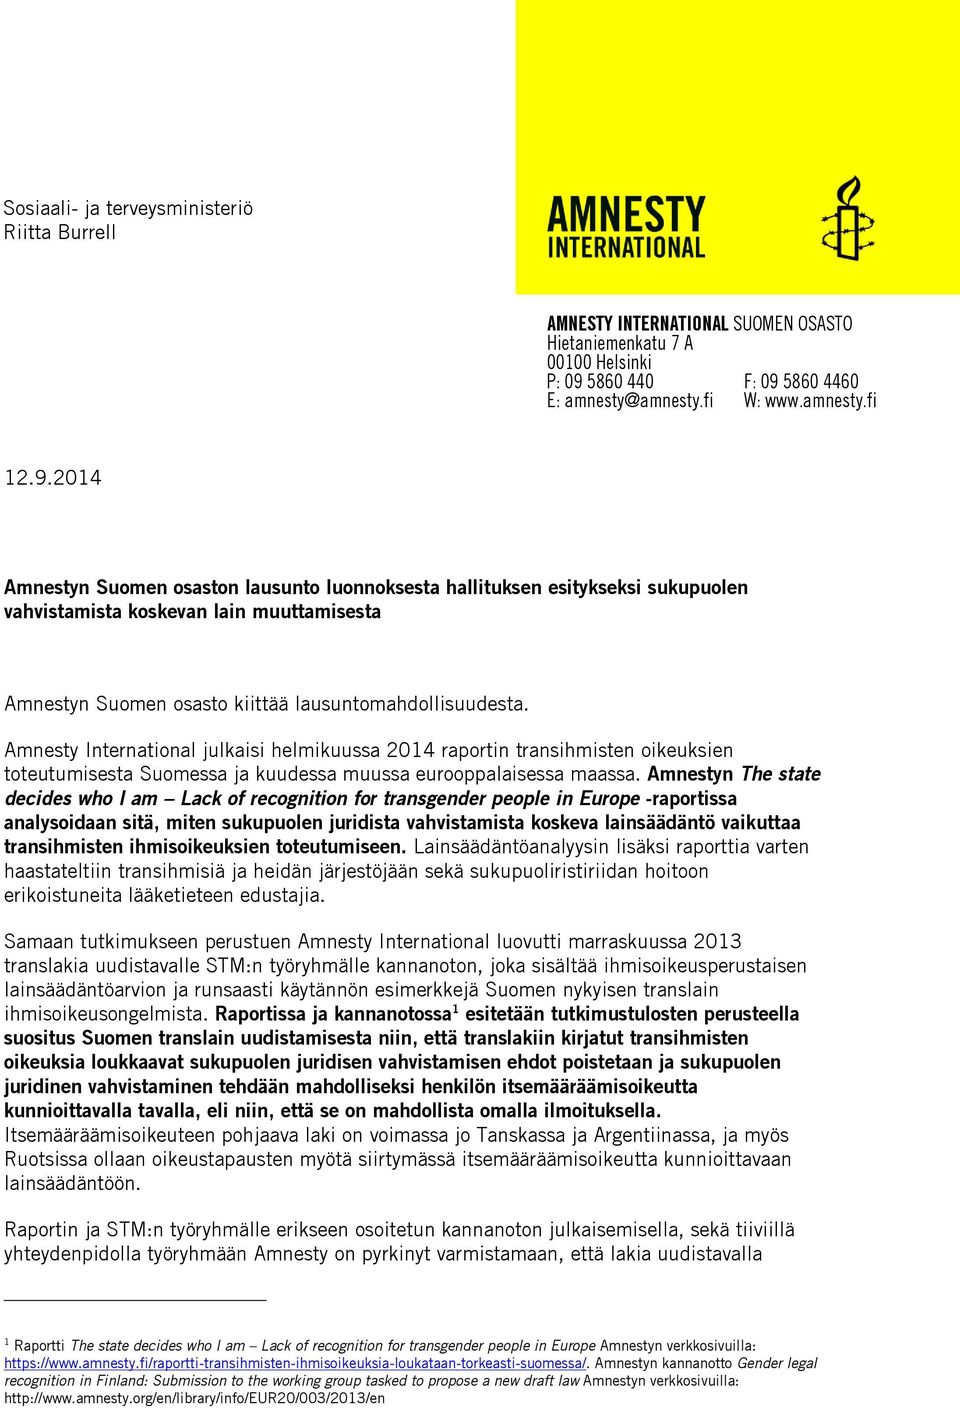 Amnesty International julkaisi helmikuussa 2014 raportin transihmisten oikeuksien toteutumisesta Suomessa ja kuudessa muussa eurooppalaisessa maassa.